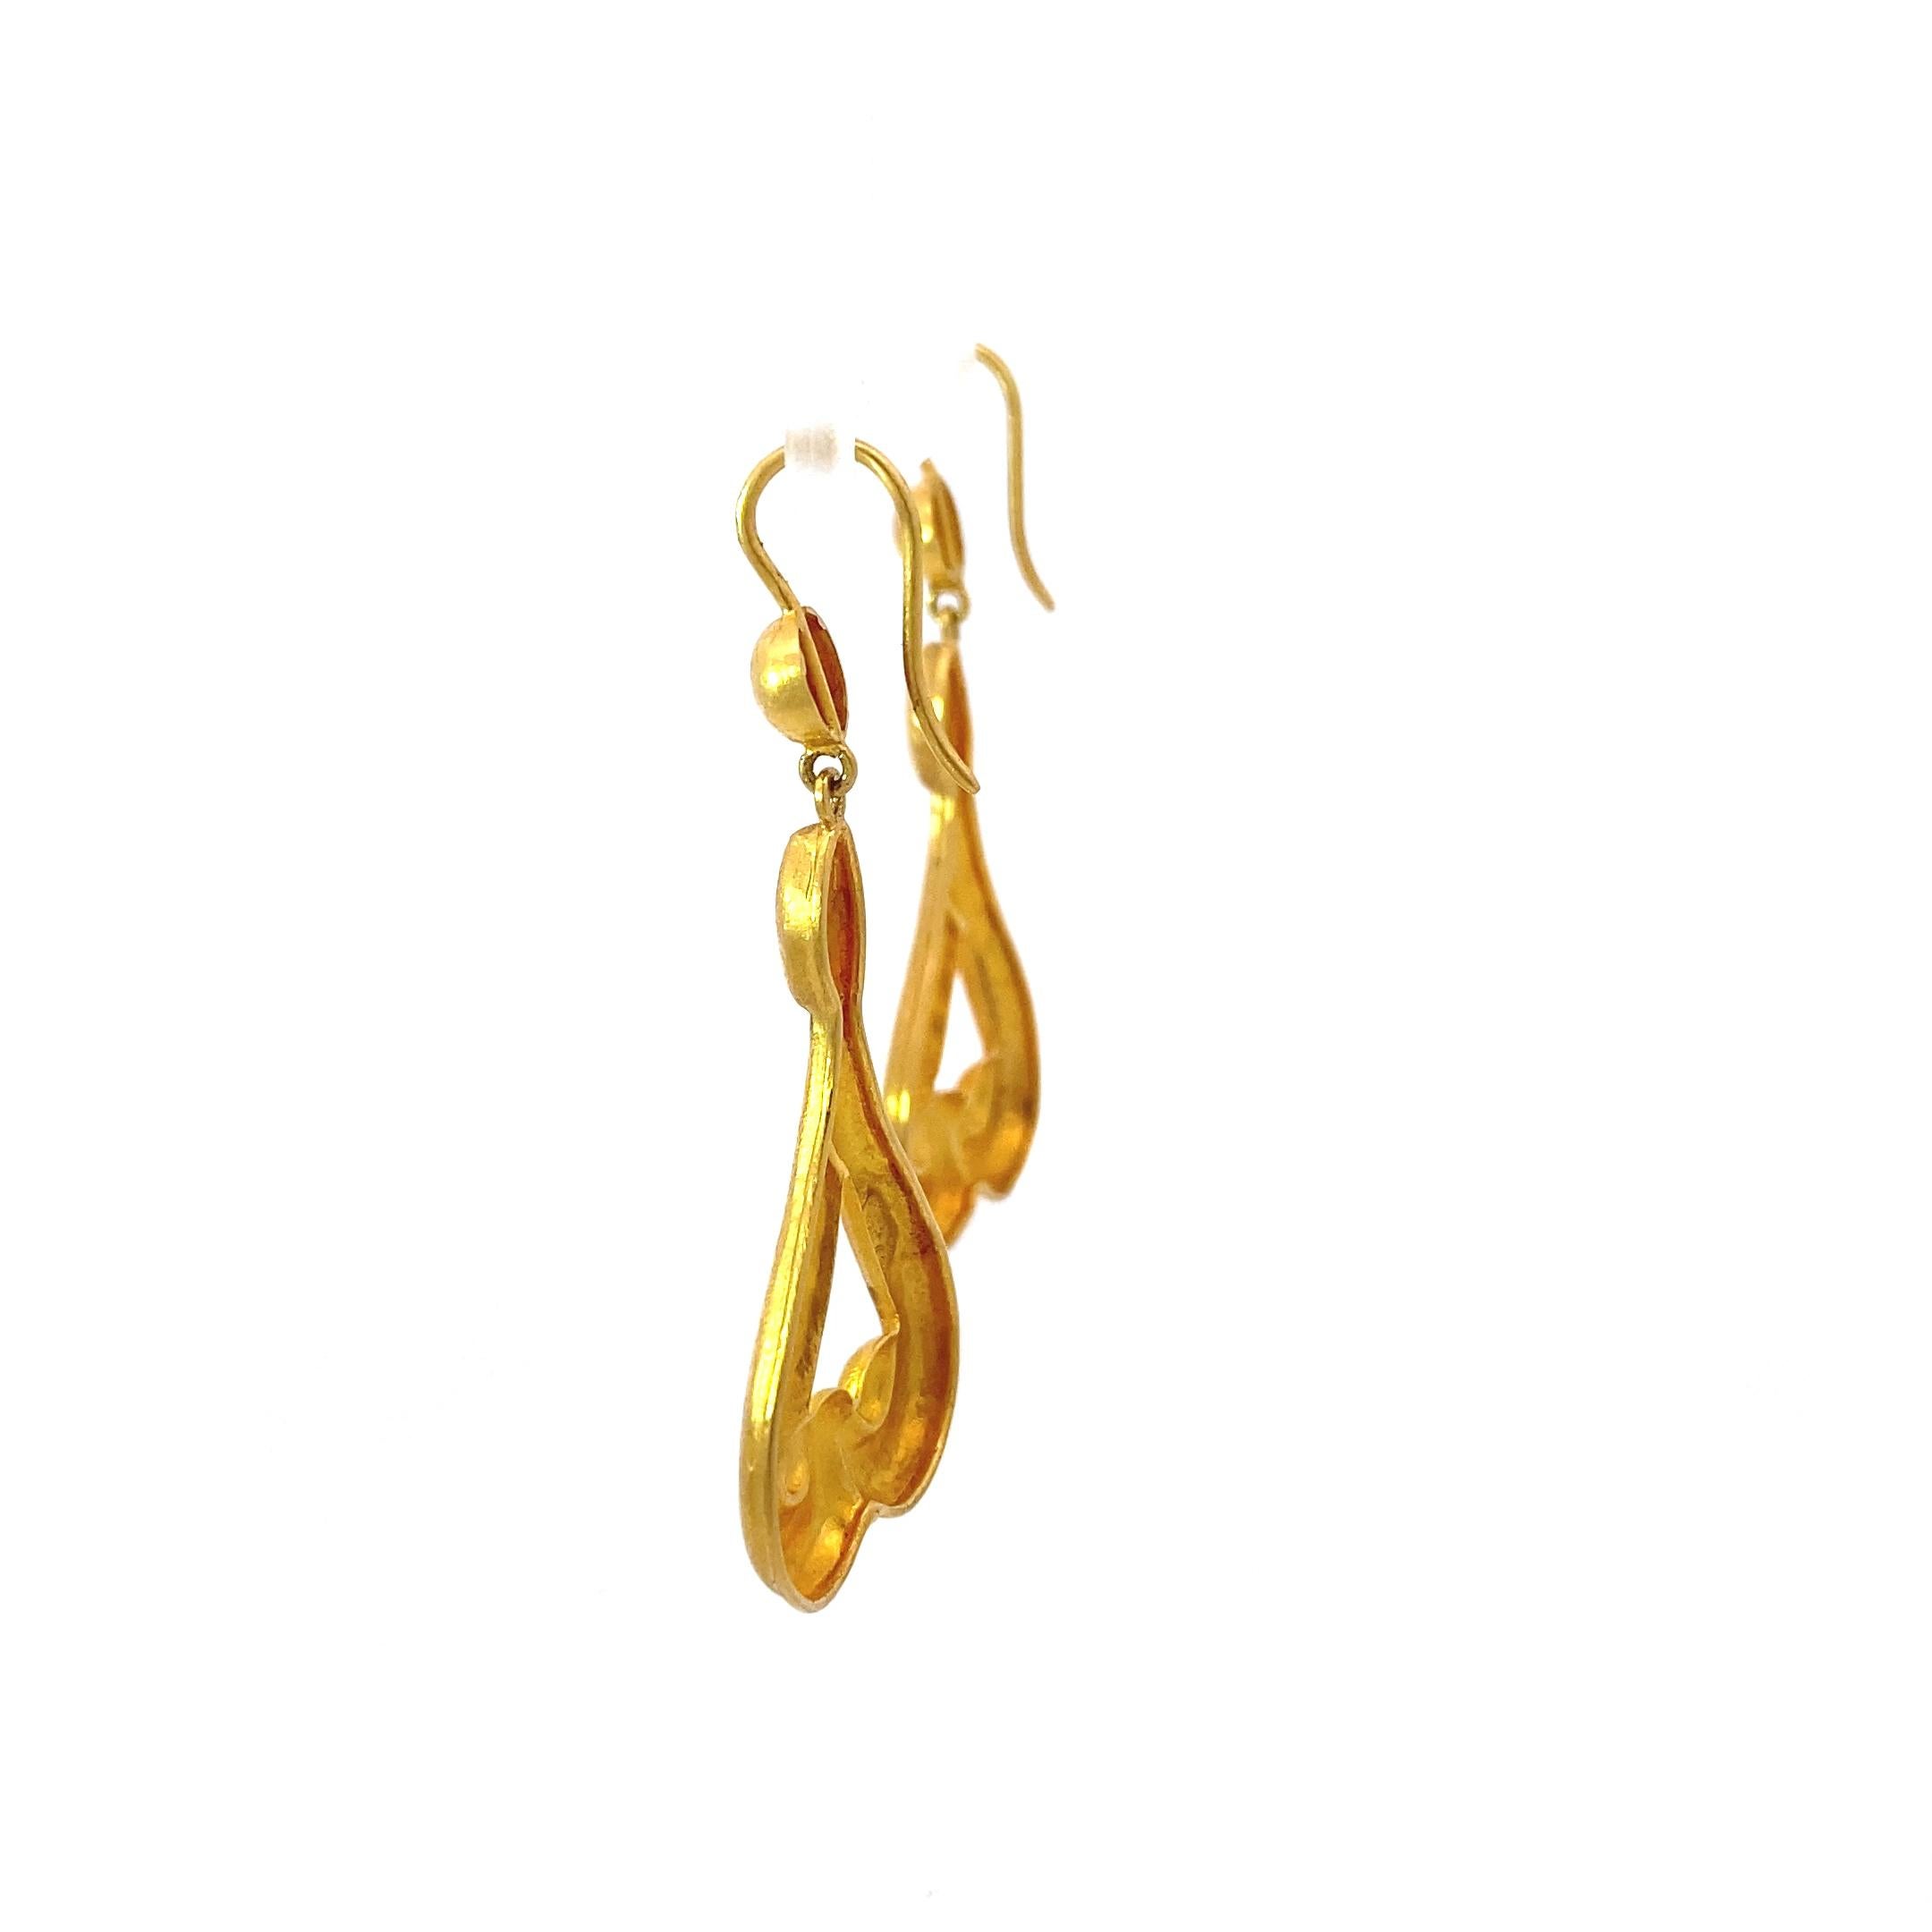 Boucles d'oreilles pendantes à l'imagerie grecque iconique de la créatrice de bijoux Lalaounis. Ces boucles d'oreilles sont d'un jaune incroyablement riche, semblable à celui de l'or à haut carat et de la joaillerie ancienne. 

La forme triangulaire